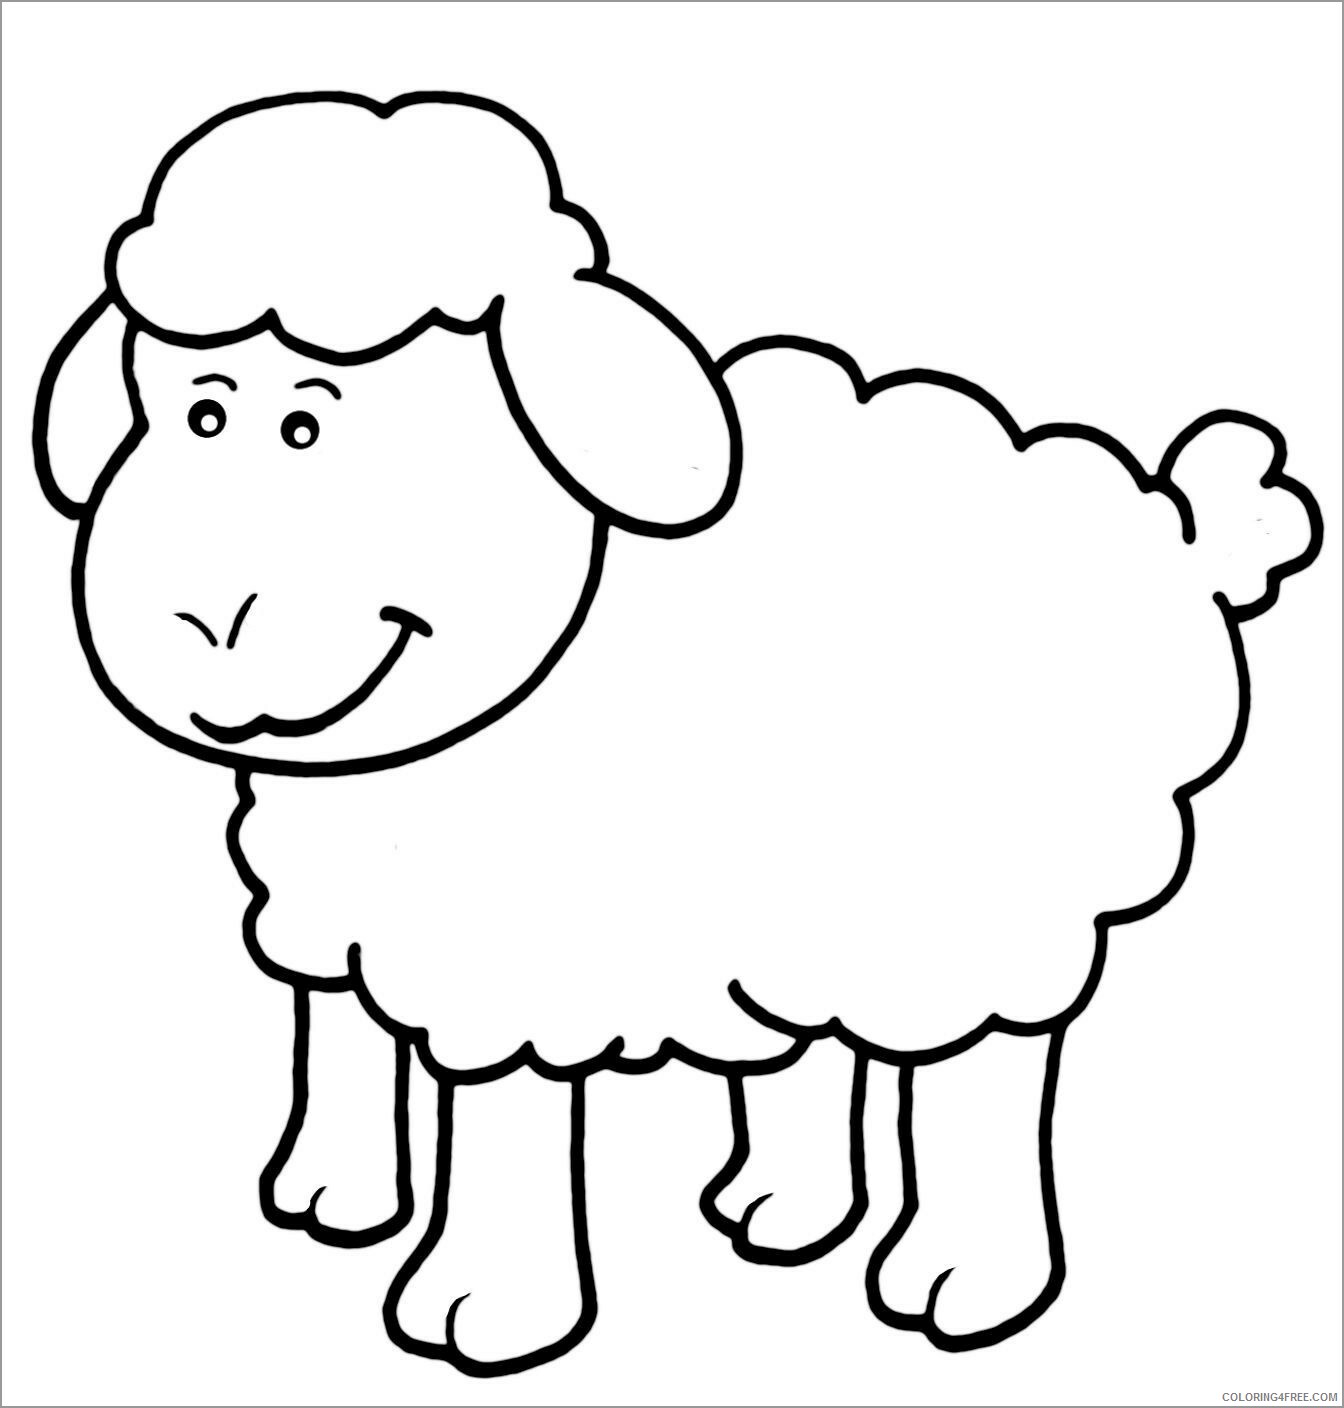 Lamb Coloring Pages Animal Printable Sheets cute lamb 2021 3118 Coloring4free